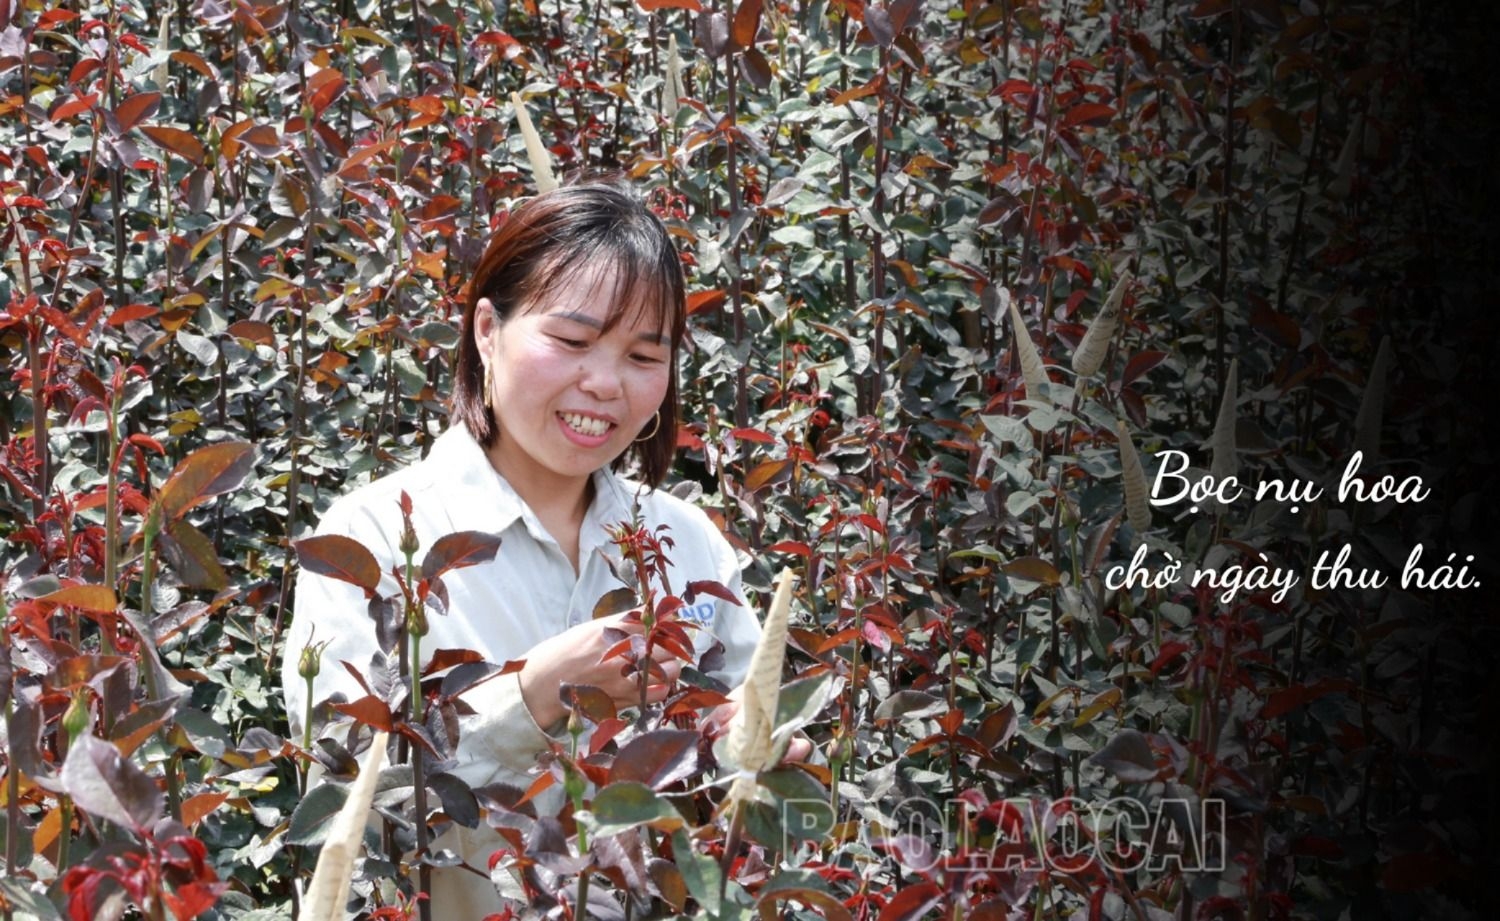 Ở một con đèo nổi tiếng Lào Cai, bất ngờ thấy bạt ngàn hoa hồng cổ, thơm khắp đồi, nông dân kiếm bộn tiền - Ảnh 6.